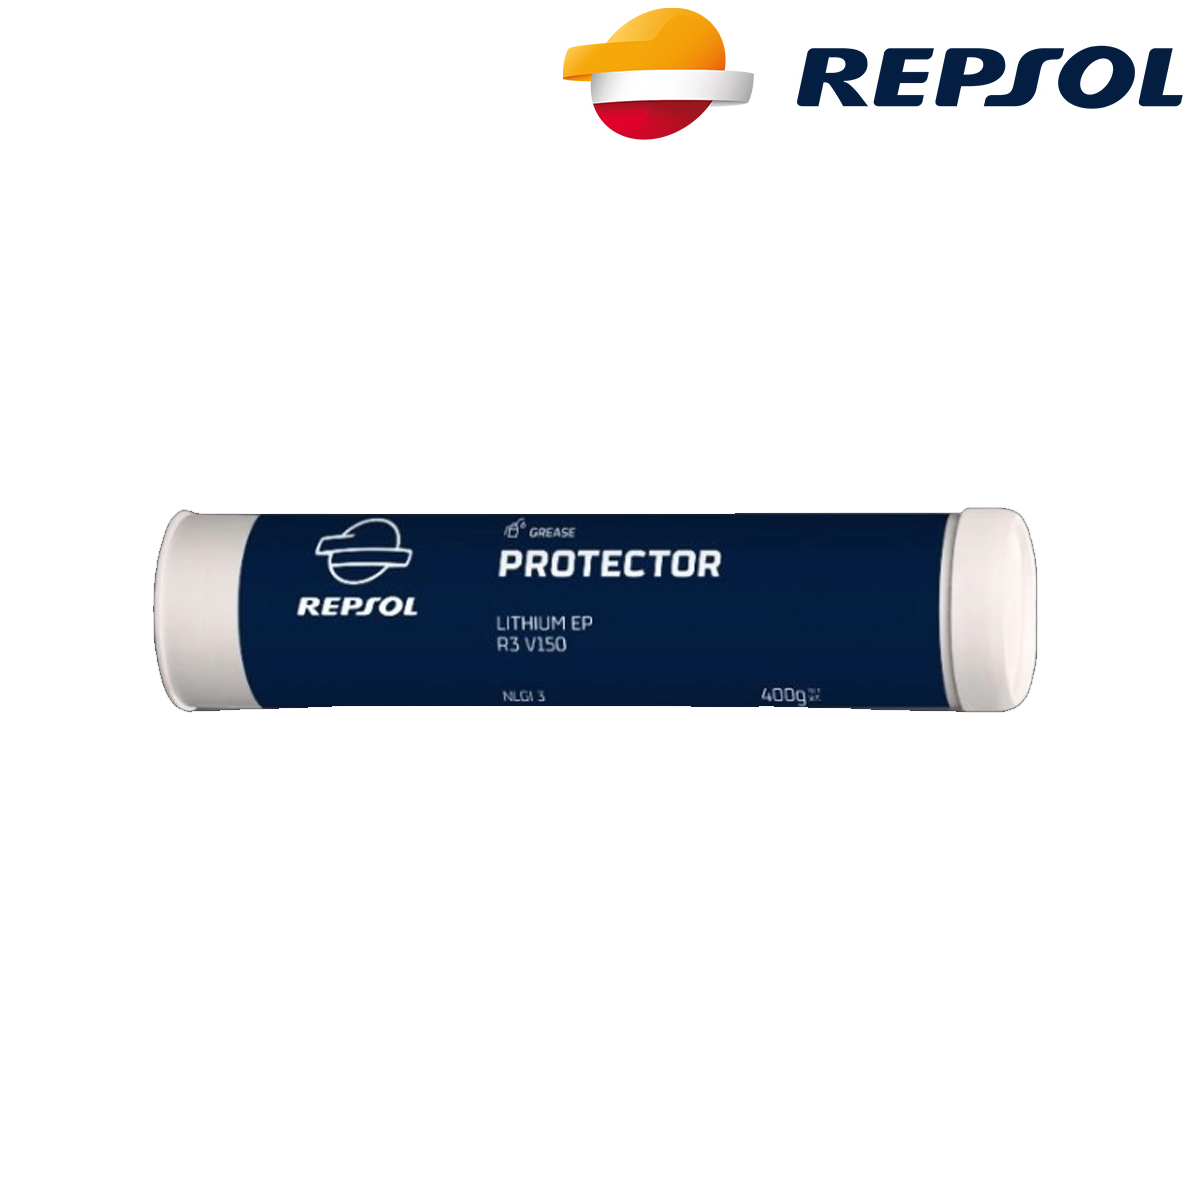 Univerzalna mast za podmazivanje Repsol Protector Lithium EP R2 V150 400g RPP8003EJG